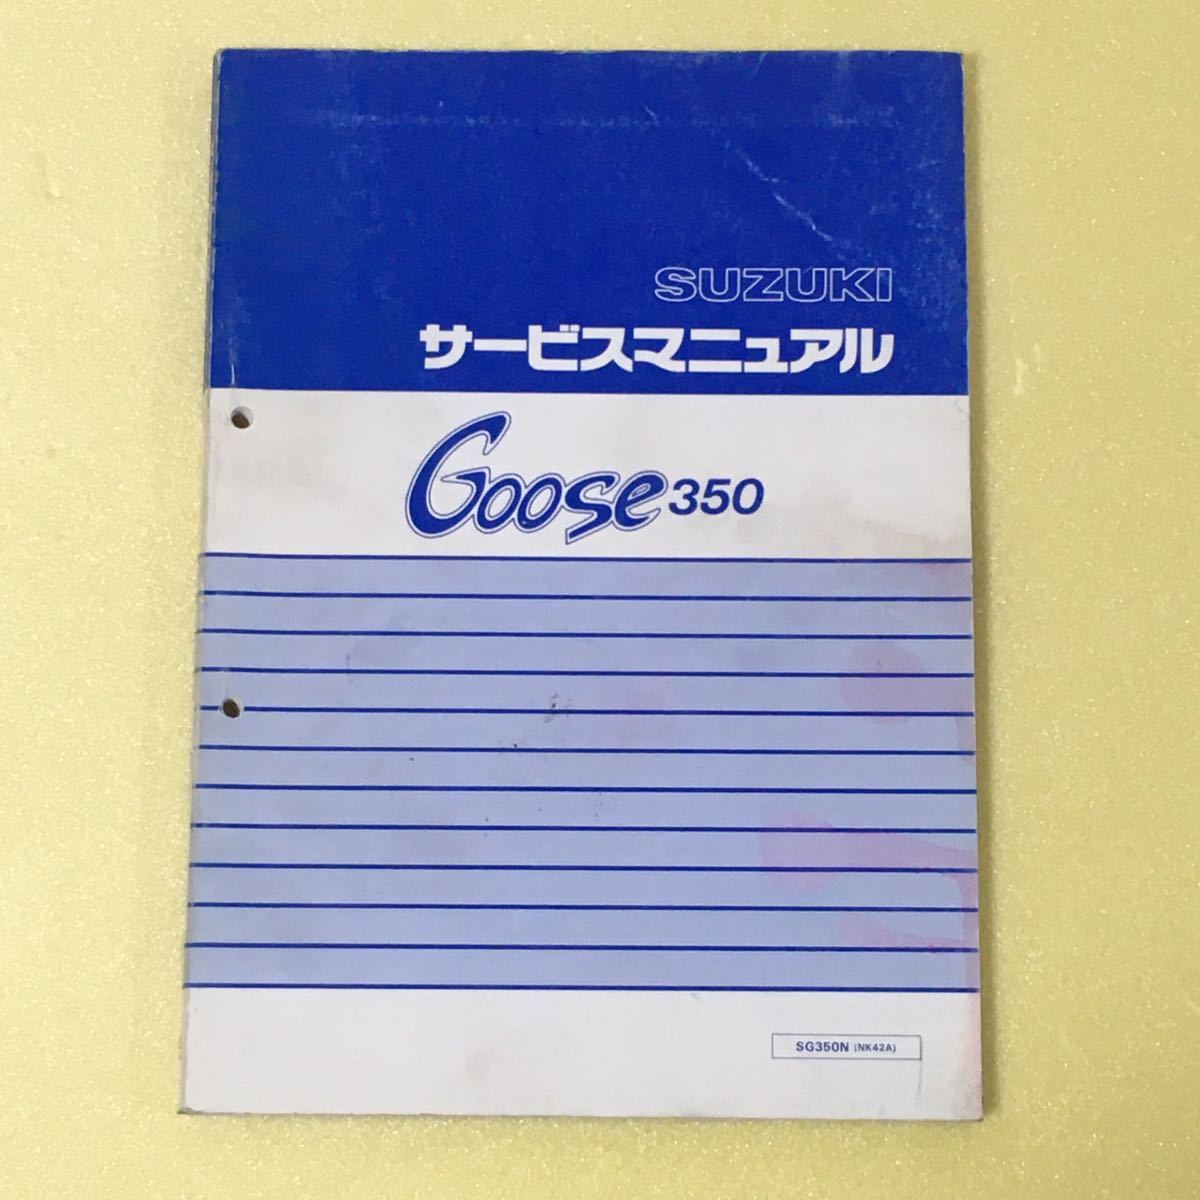 グース350 Goose350 サービスマニュアル NK42A スズキ 整備書 修理書 解説書